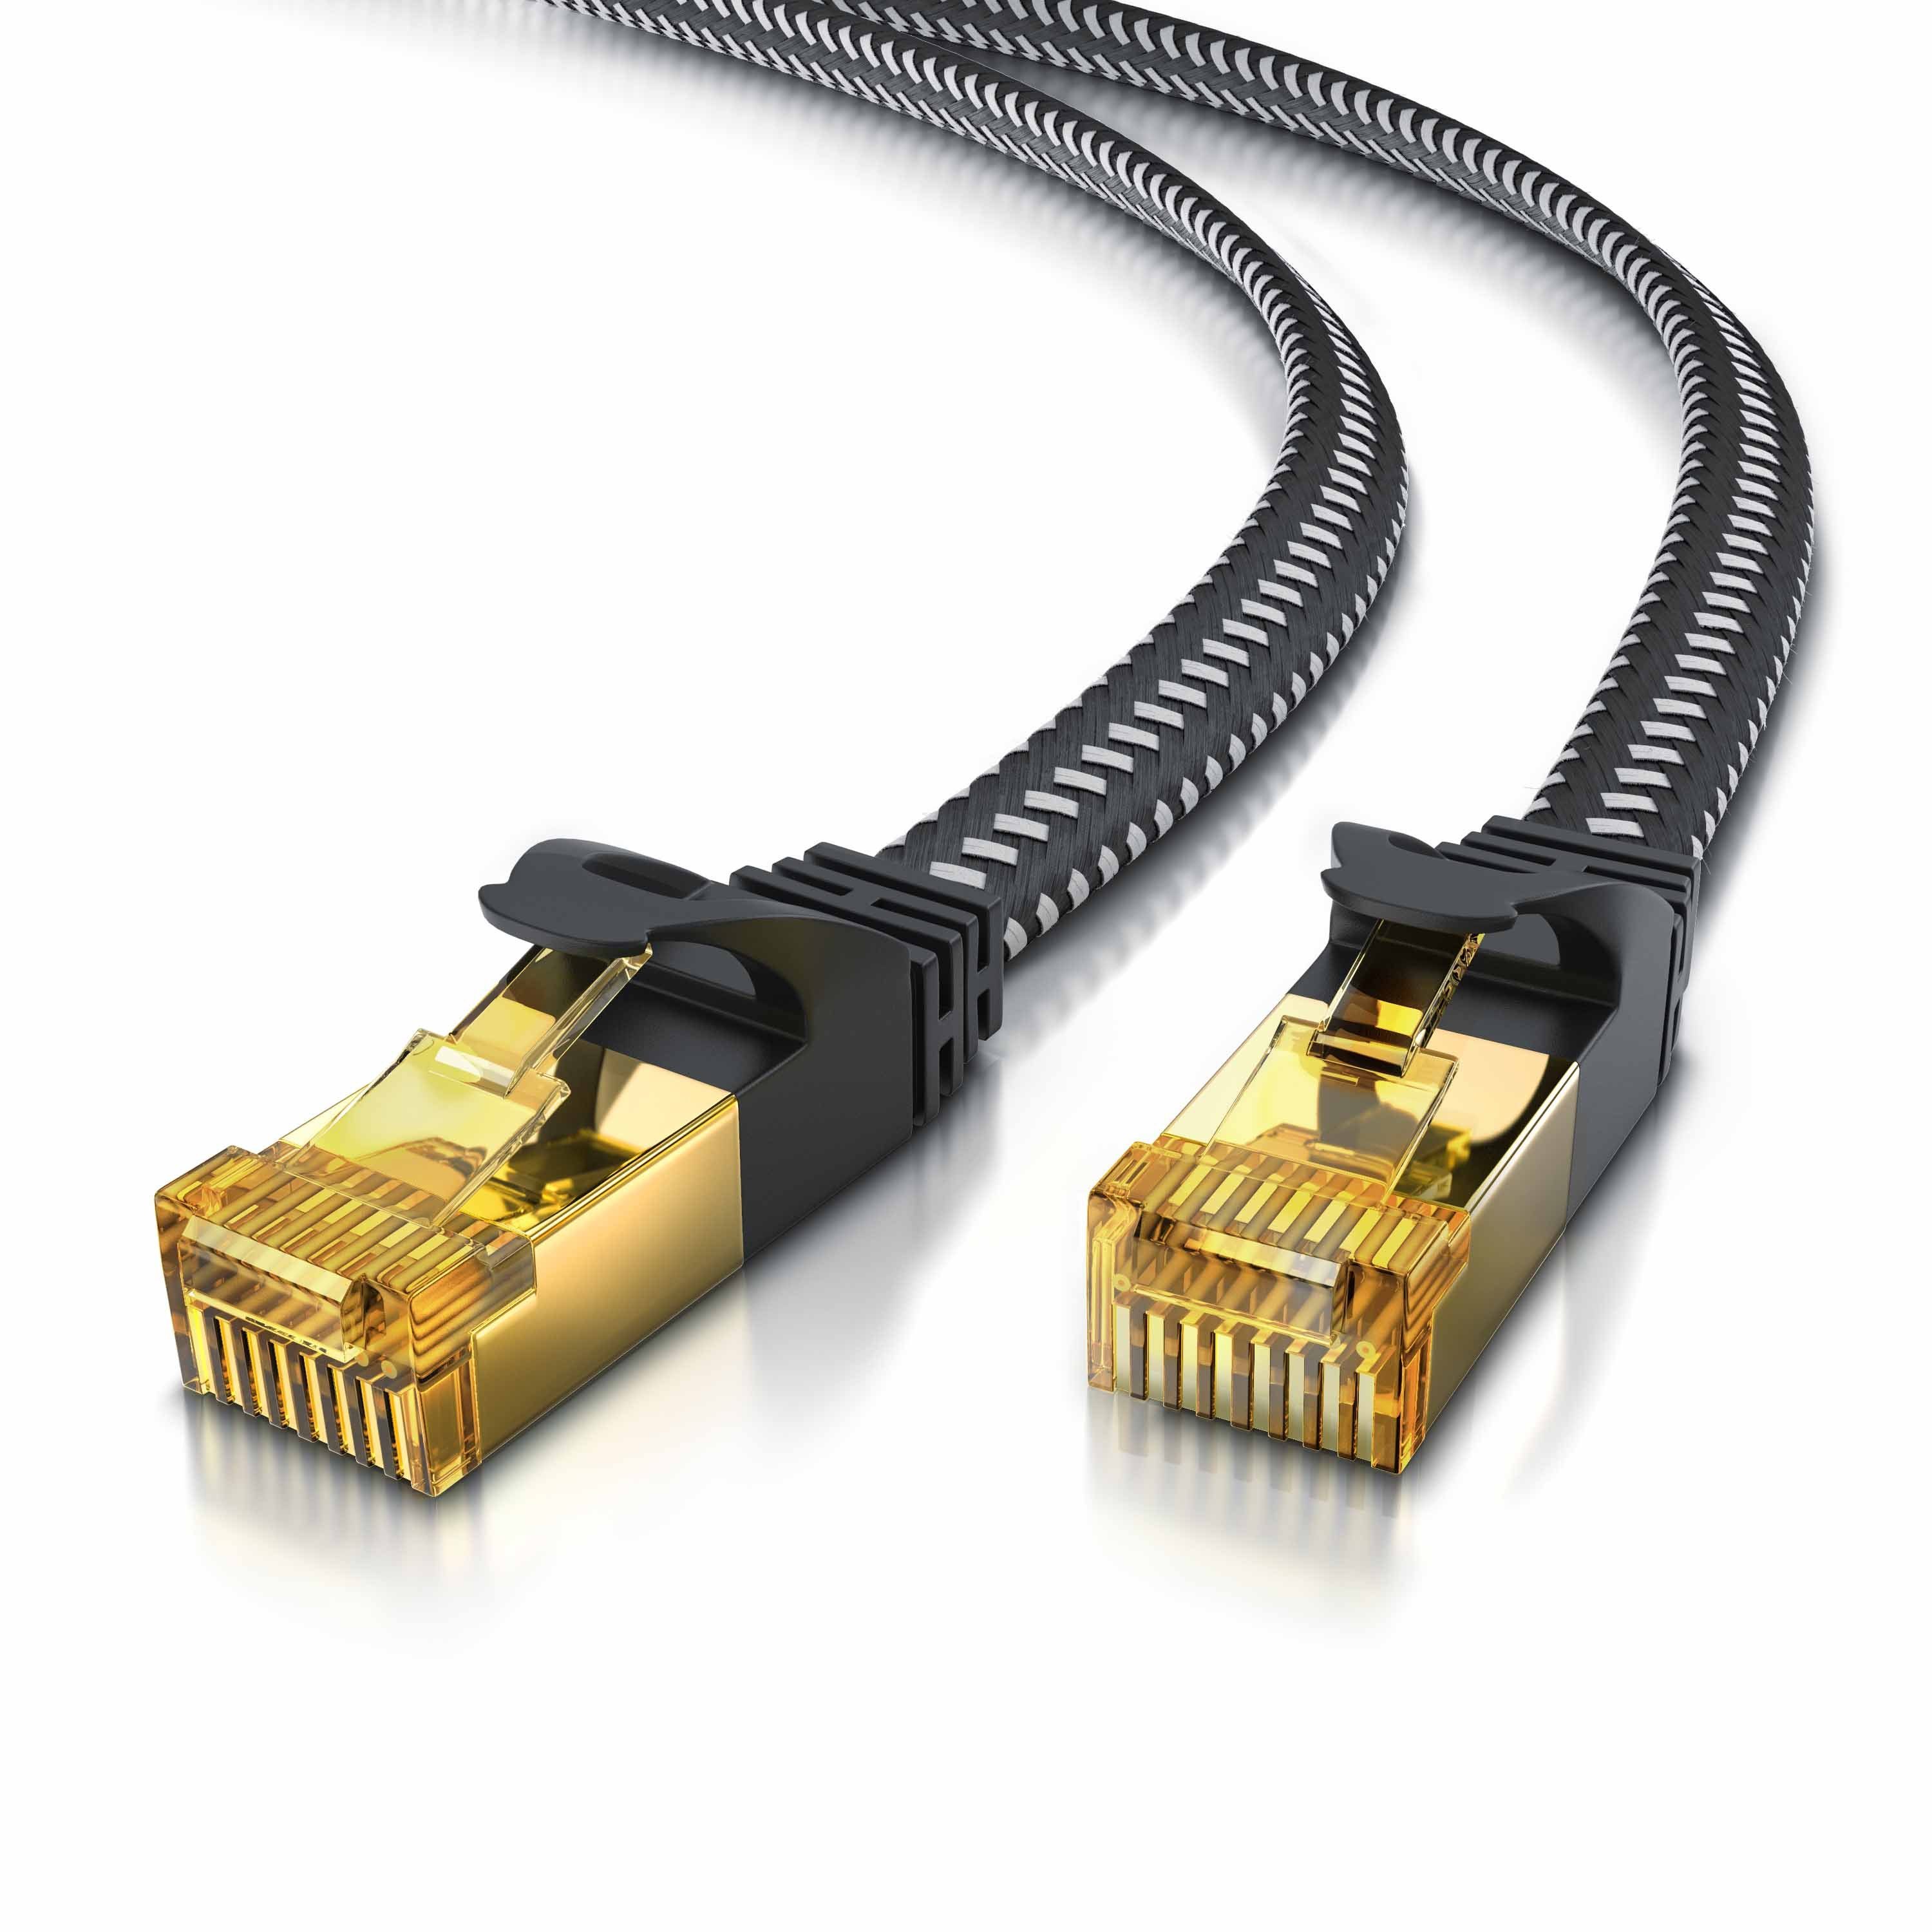 Primewire LAN-Kabel, CAT.7, RJ-45 (Ethernet) (50 cm), Patchkabel flach CAT 7, Baumwollmantel, Flachband Netzwerkkabel - 0,5m